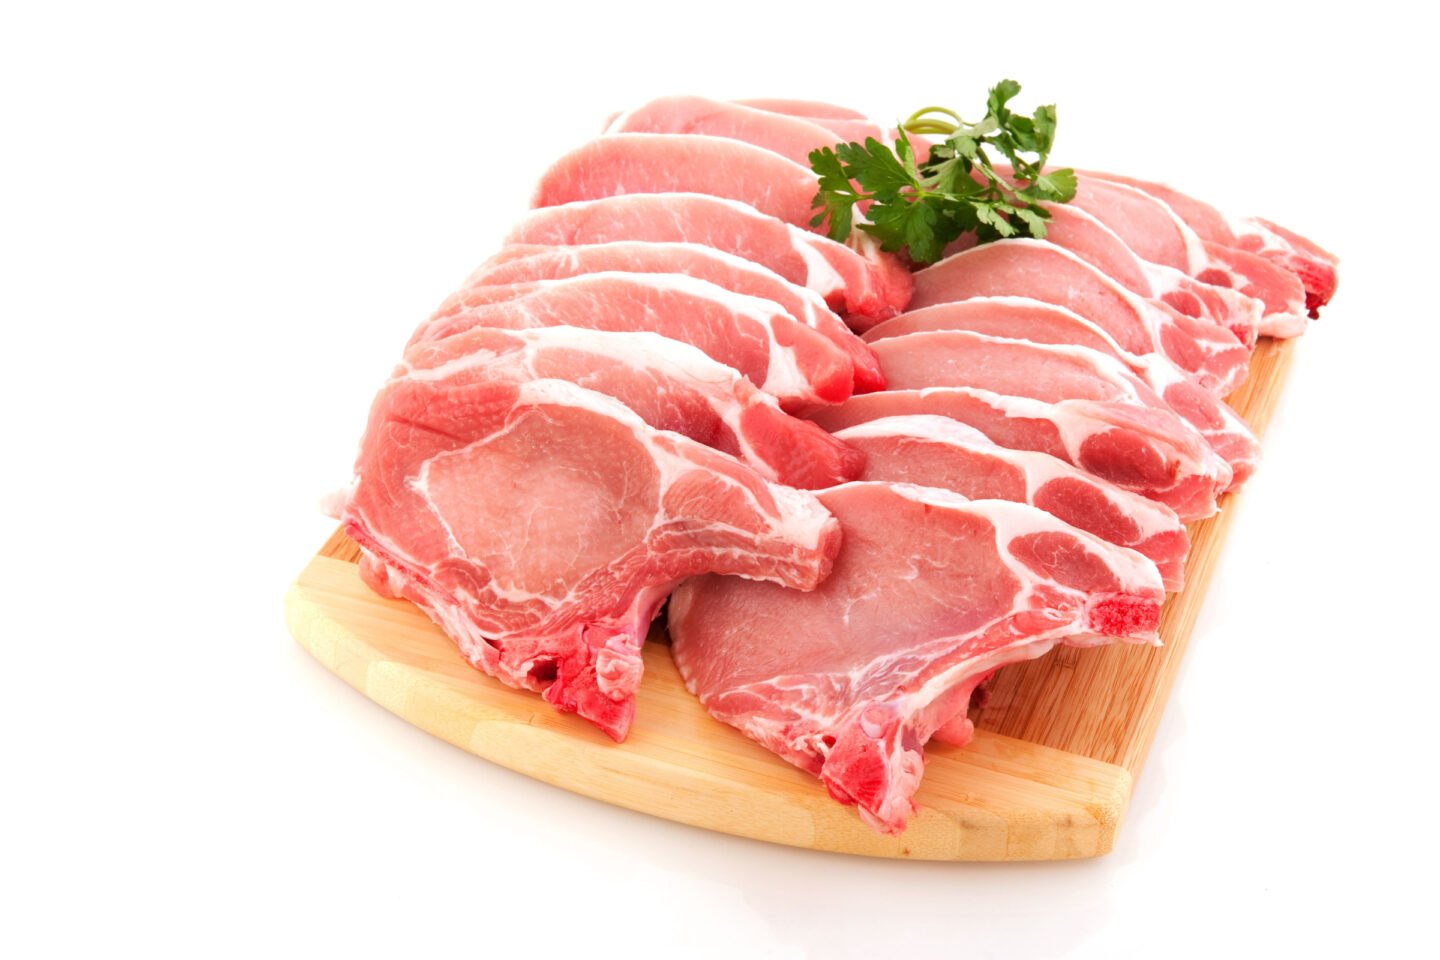 raw pork chops on wooden board